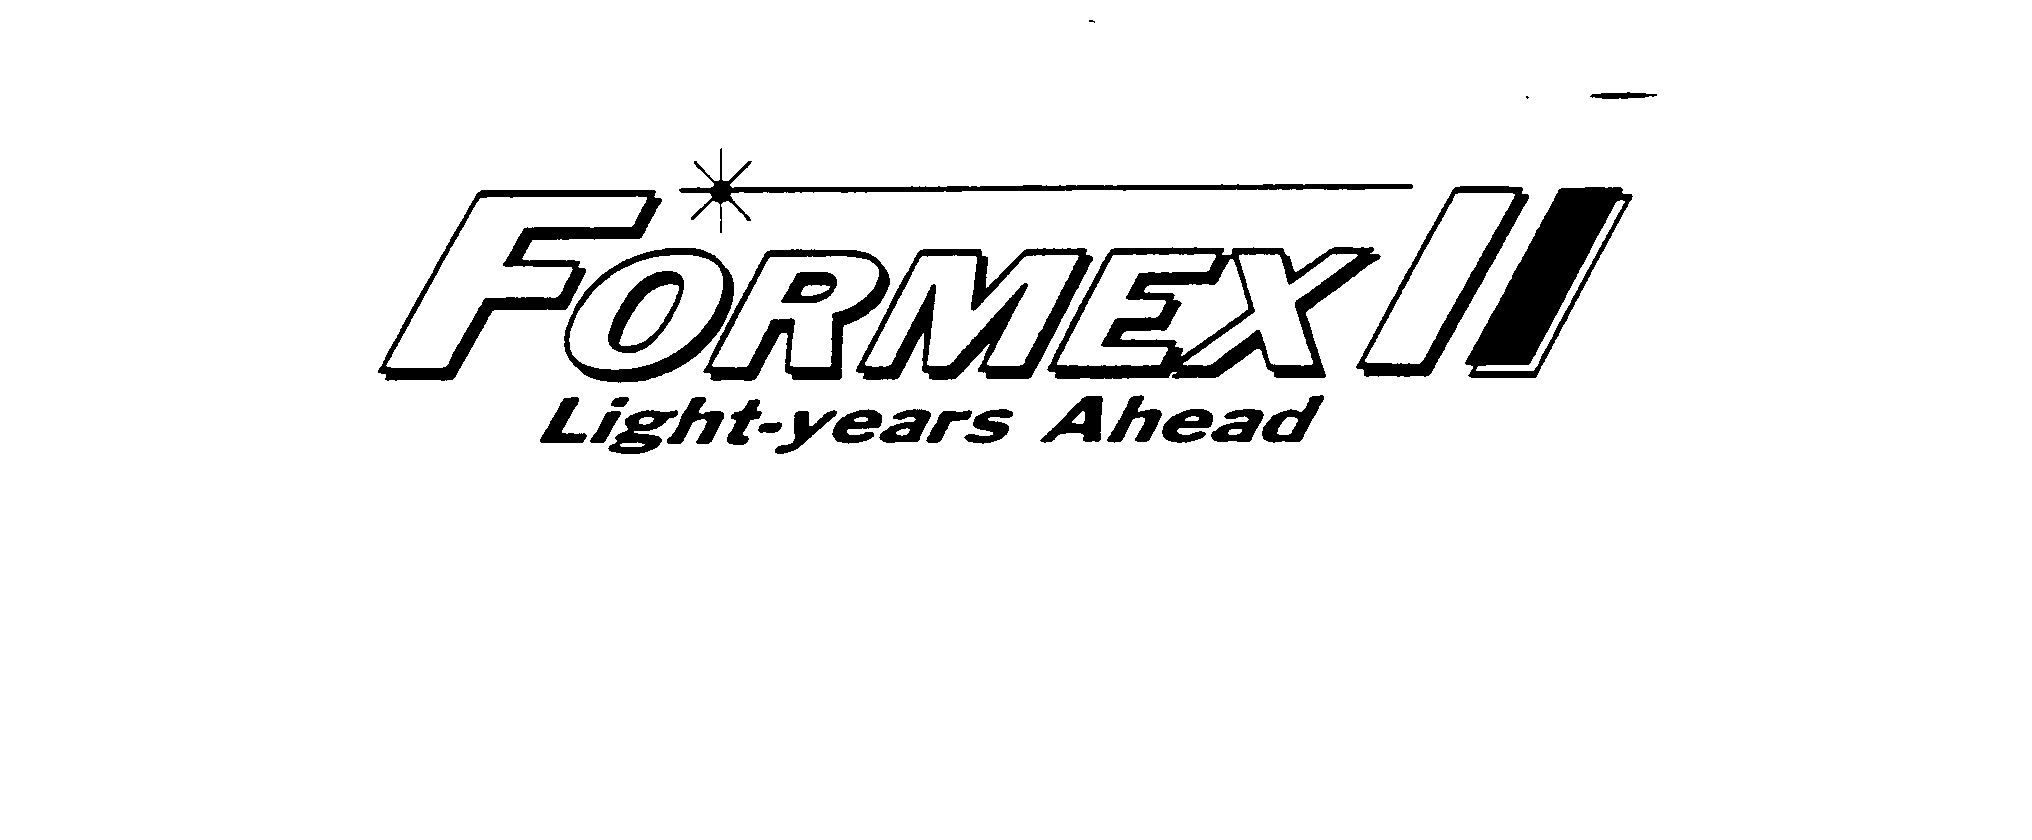 Trademark Logo FORMEX II LIGHT-YEARS AHEAD